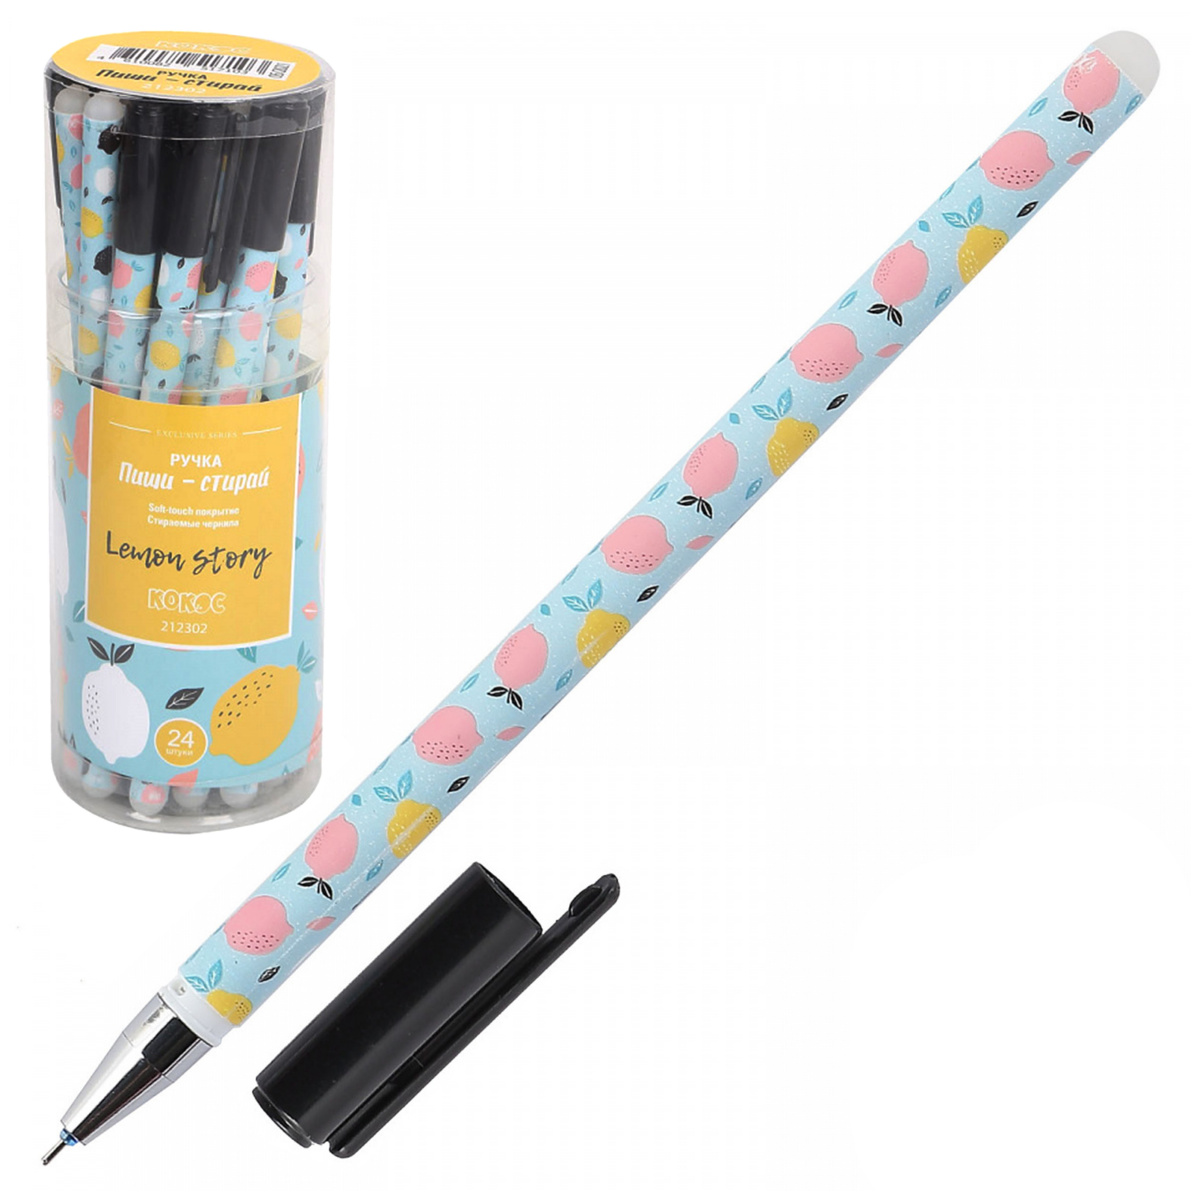 Ручка гелевая 0,5мм Пиши-стирай Lemon Story 212302 синяя | Магазин канцтоваров и игрушек Львёнок